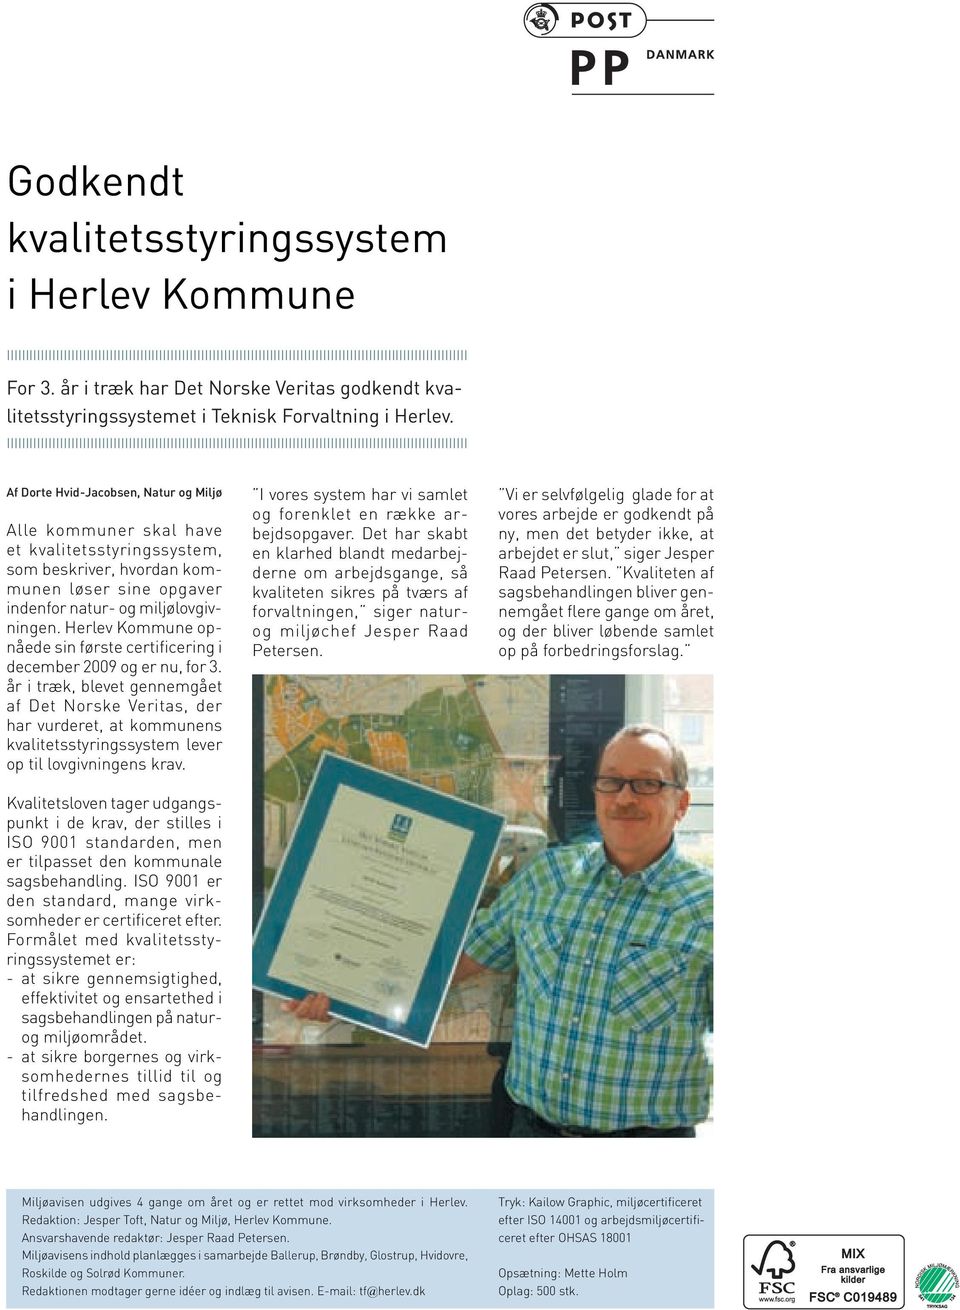 Herlev Kommune opnåede sin første certificering i december 2009 og er nu, for 3.